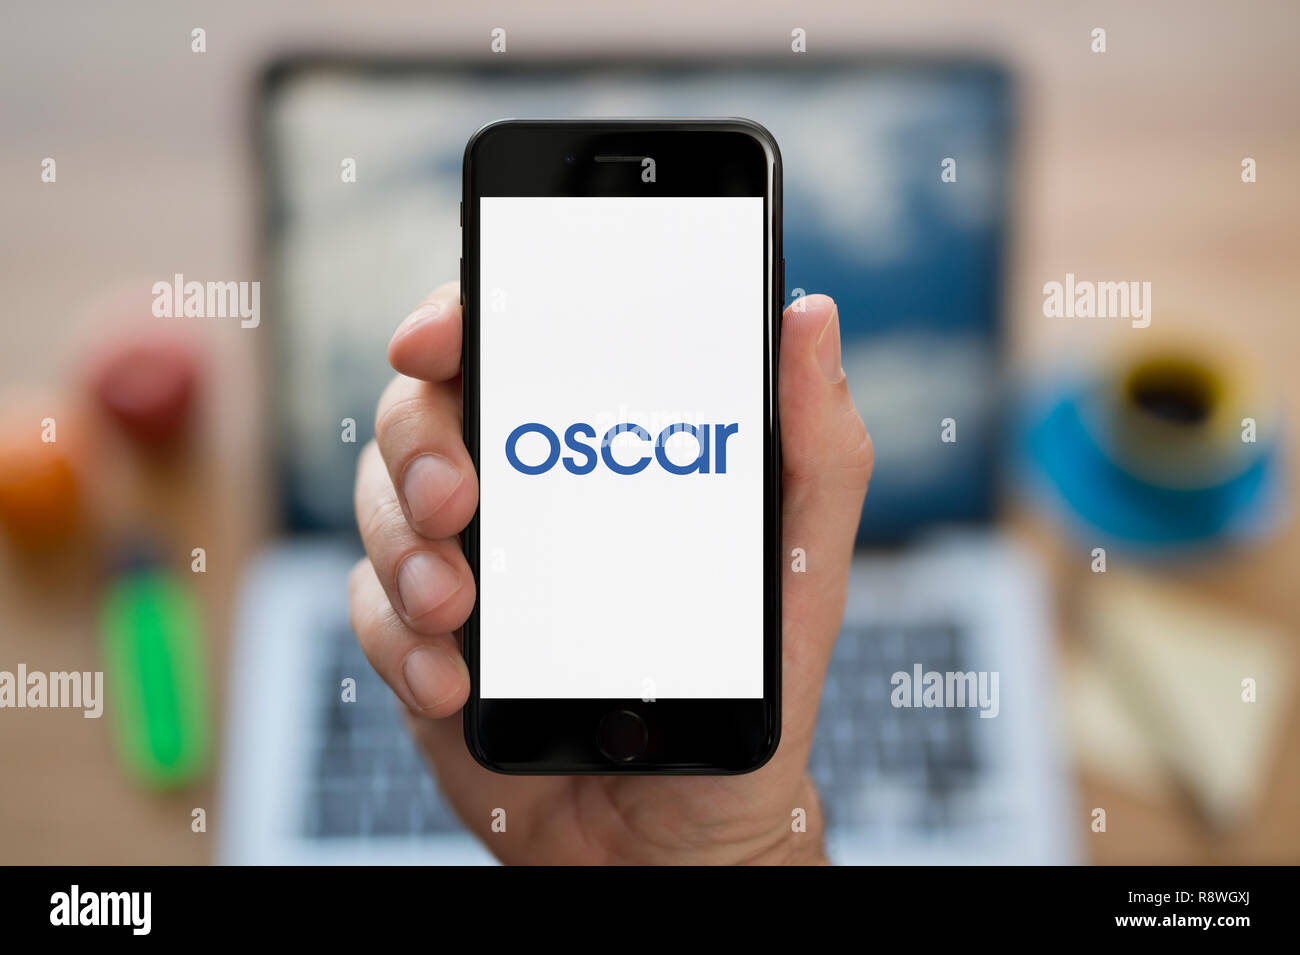 Ein Mann schaut auf seinem iPhone die zeigt die Oscar Logo (nur redaktionelle Nutzung). Stockfoto